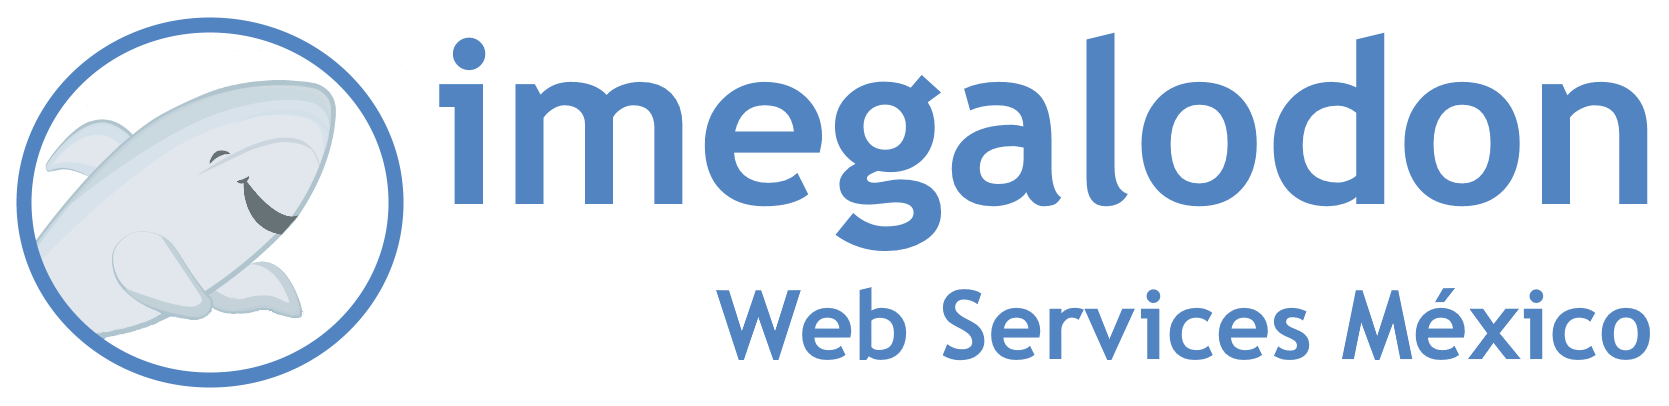 imegalodon Web Services México